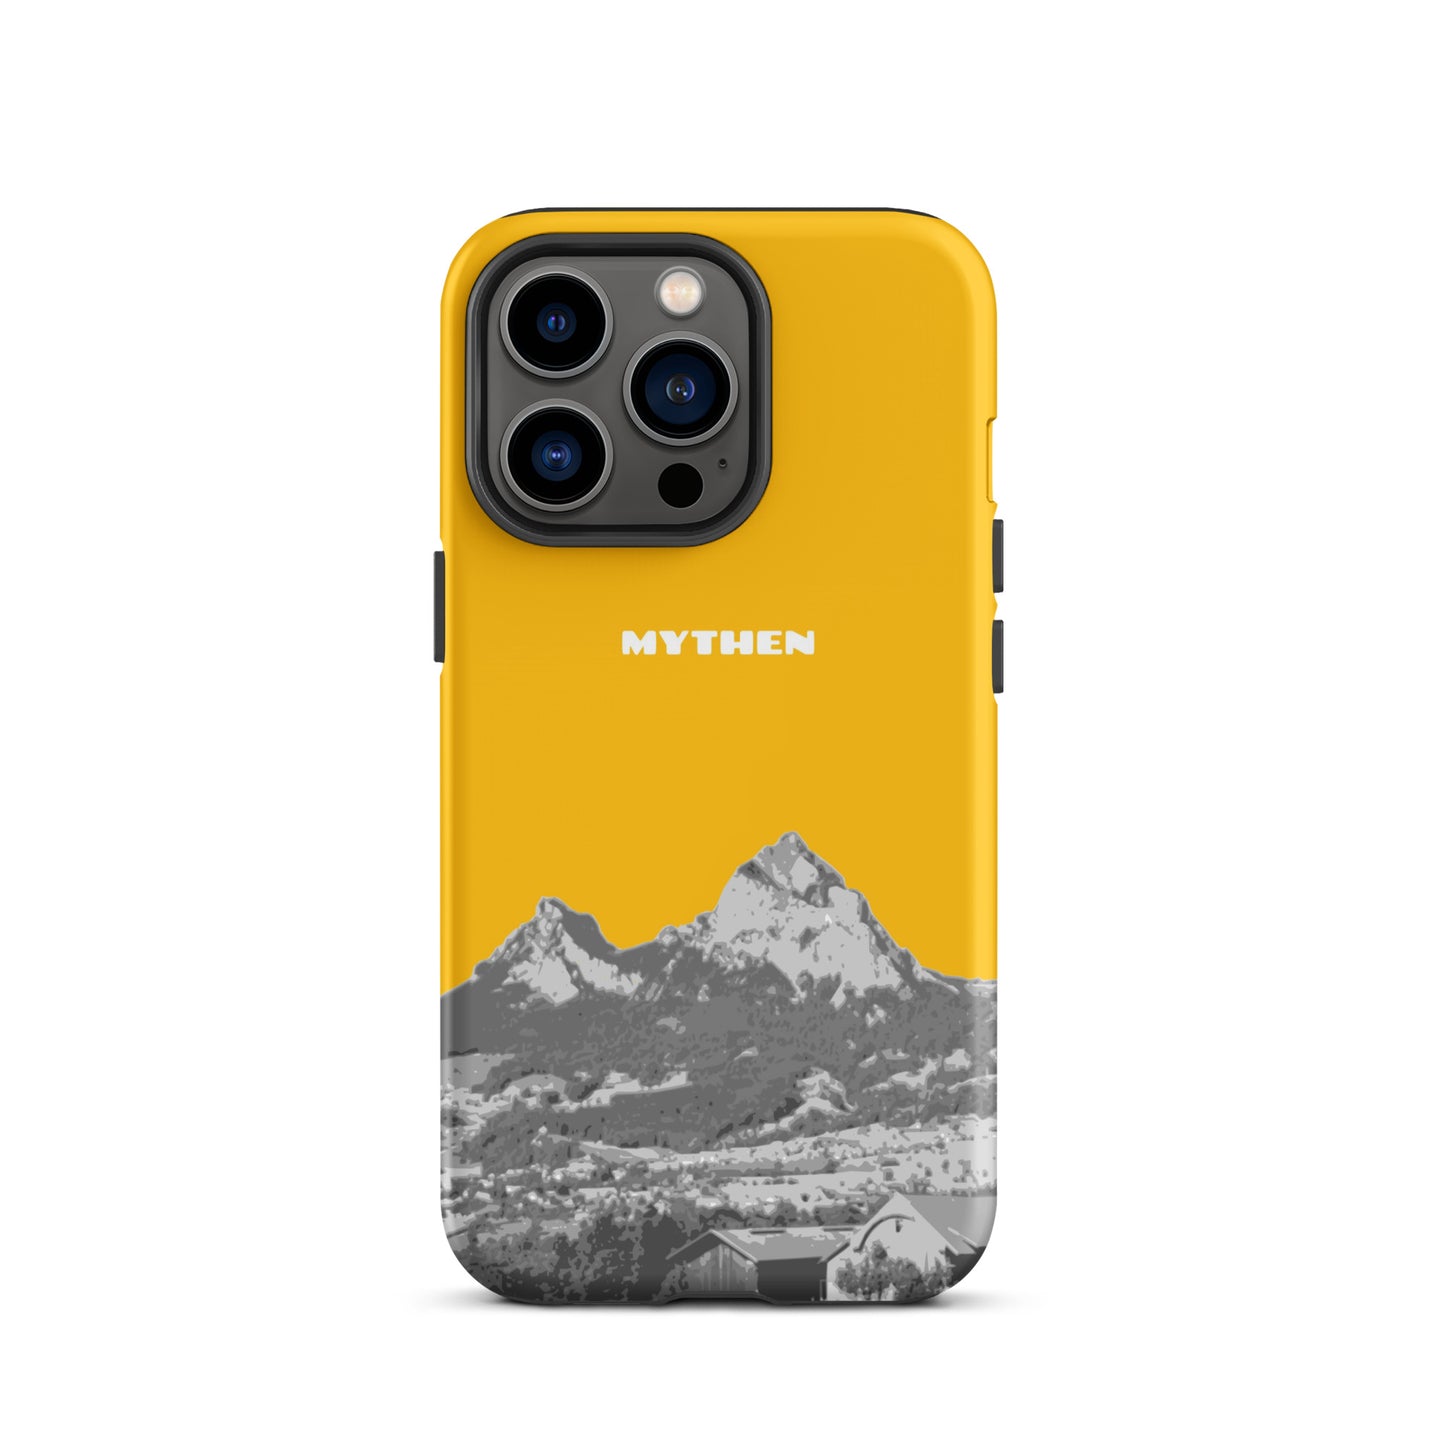 Hülle für das iPhone 13 Pro von Apple in der Farbe Goldgelb, dass den Grossen Mythen und den Kleinen Mythen bei Schwyz zeigt. 